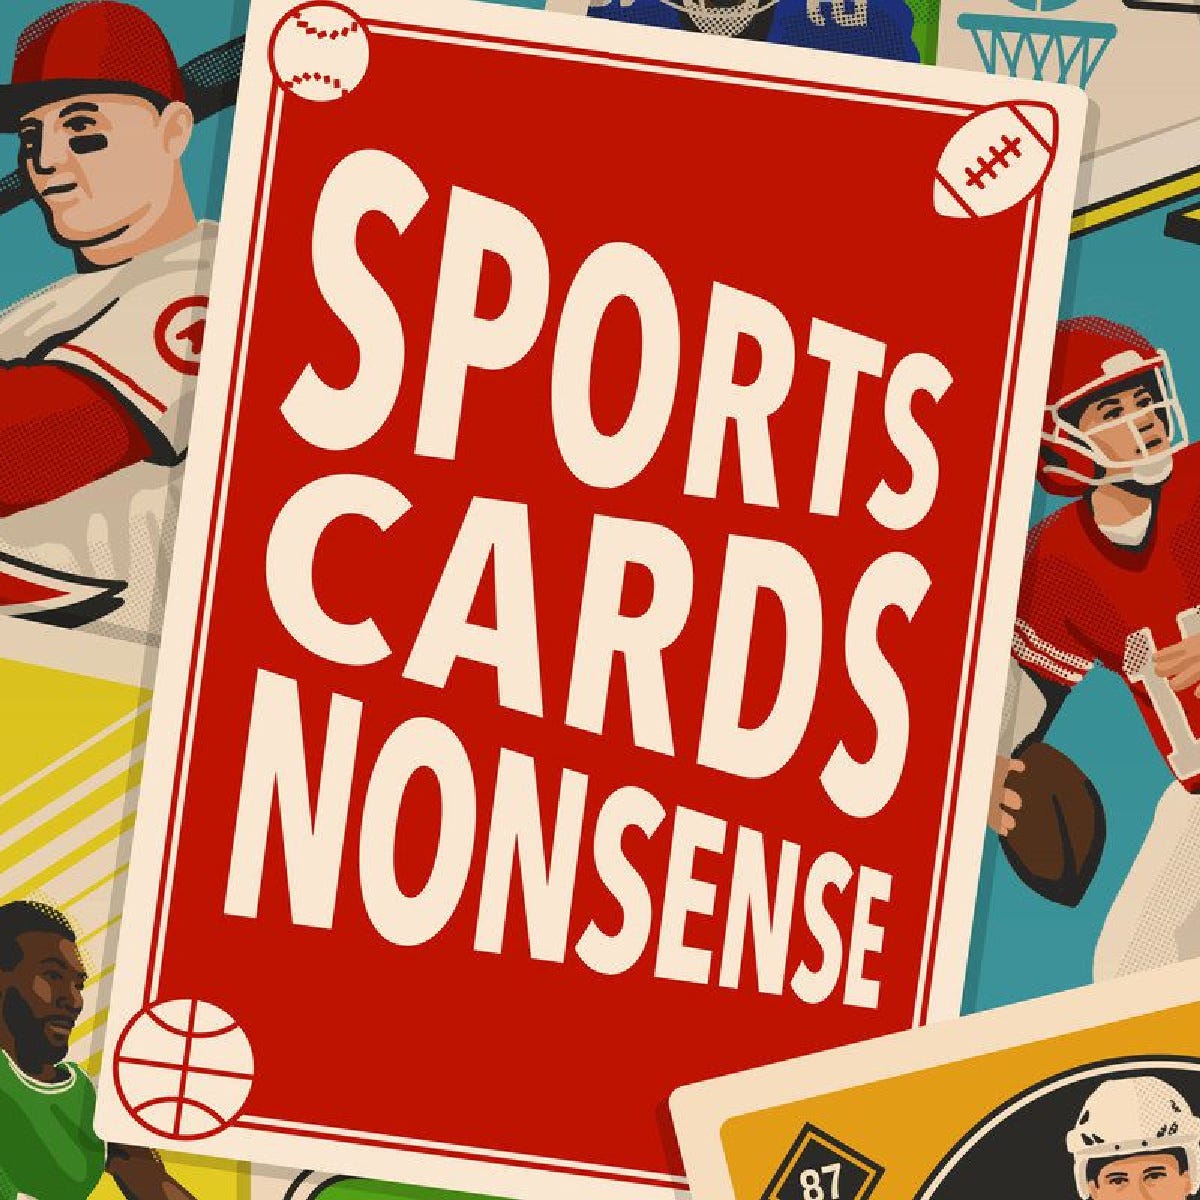 Artwork for Sports Cards Nonsense Newsletter